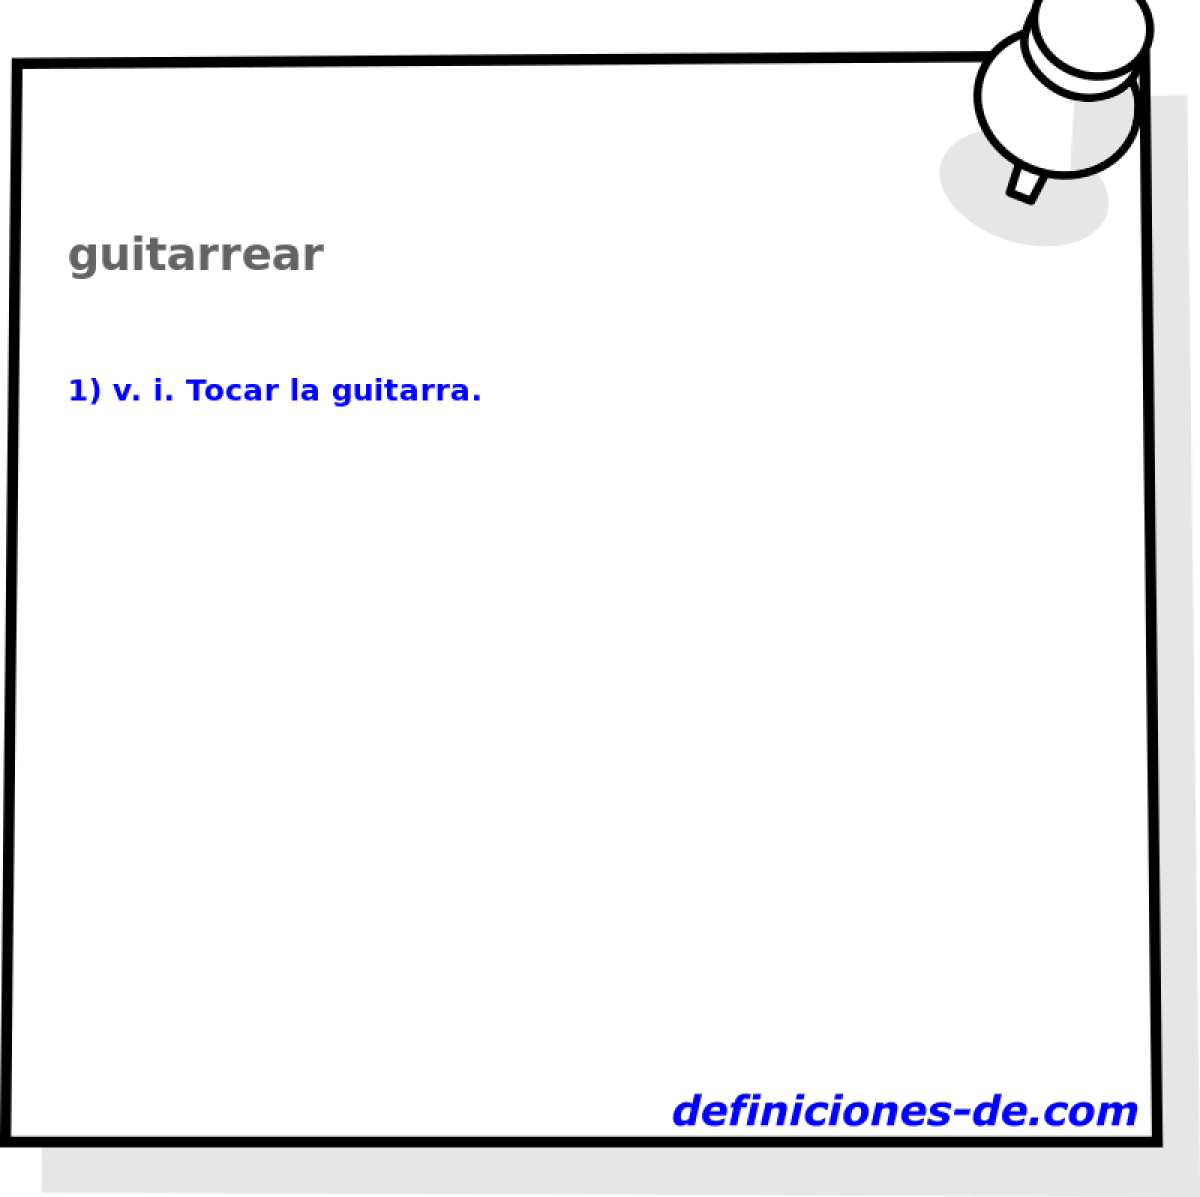 guitarrear 